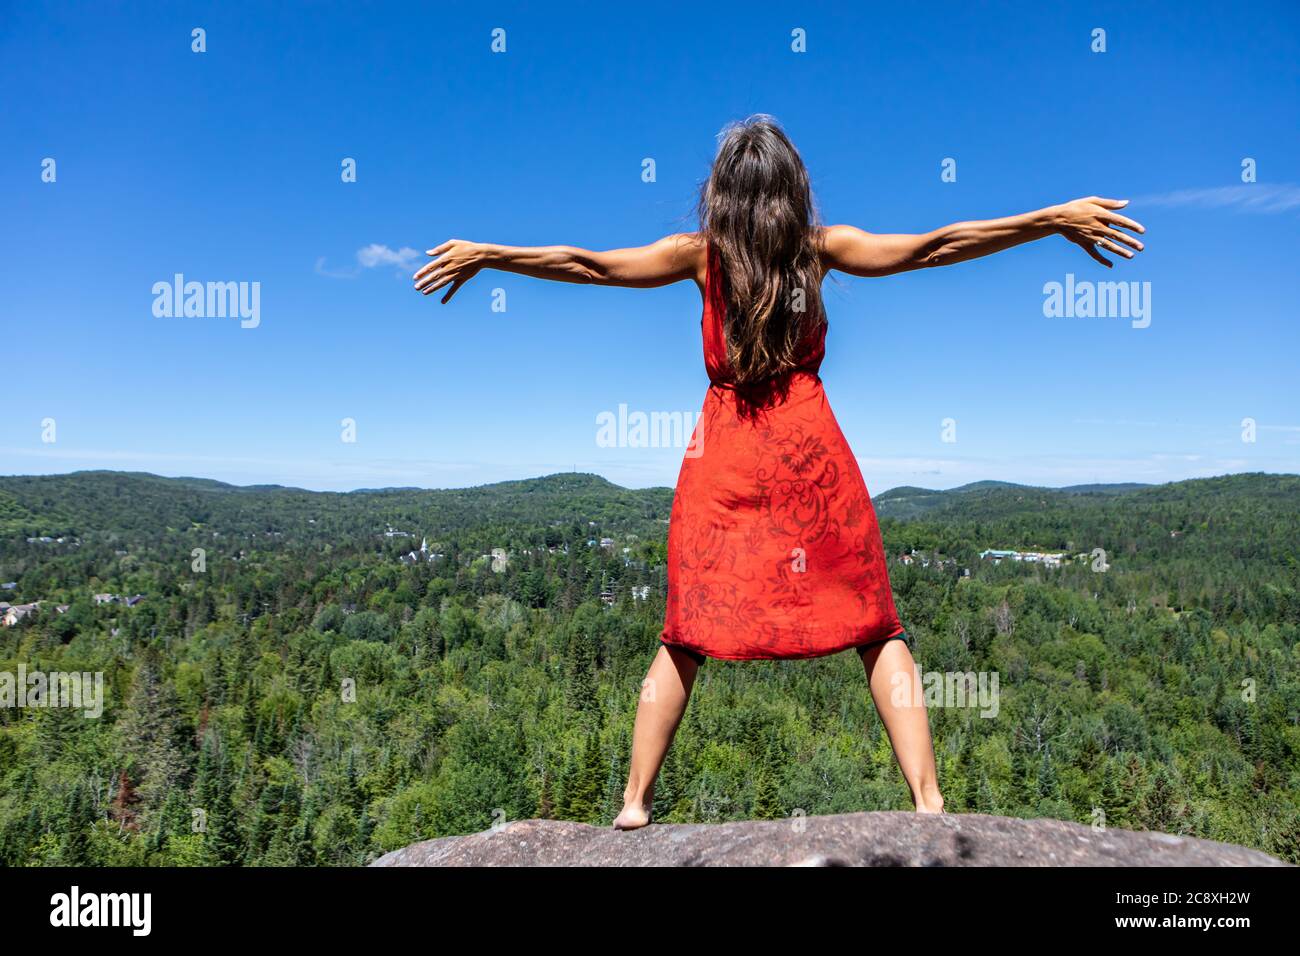 Blick von hinten auf eine junge Frau in einem roten Kleid, die ihre Arme weit öffnet und ihren Kopf in den Himmel hebt, vor einer kanadischen Berglandschaft. Stockfoto